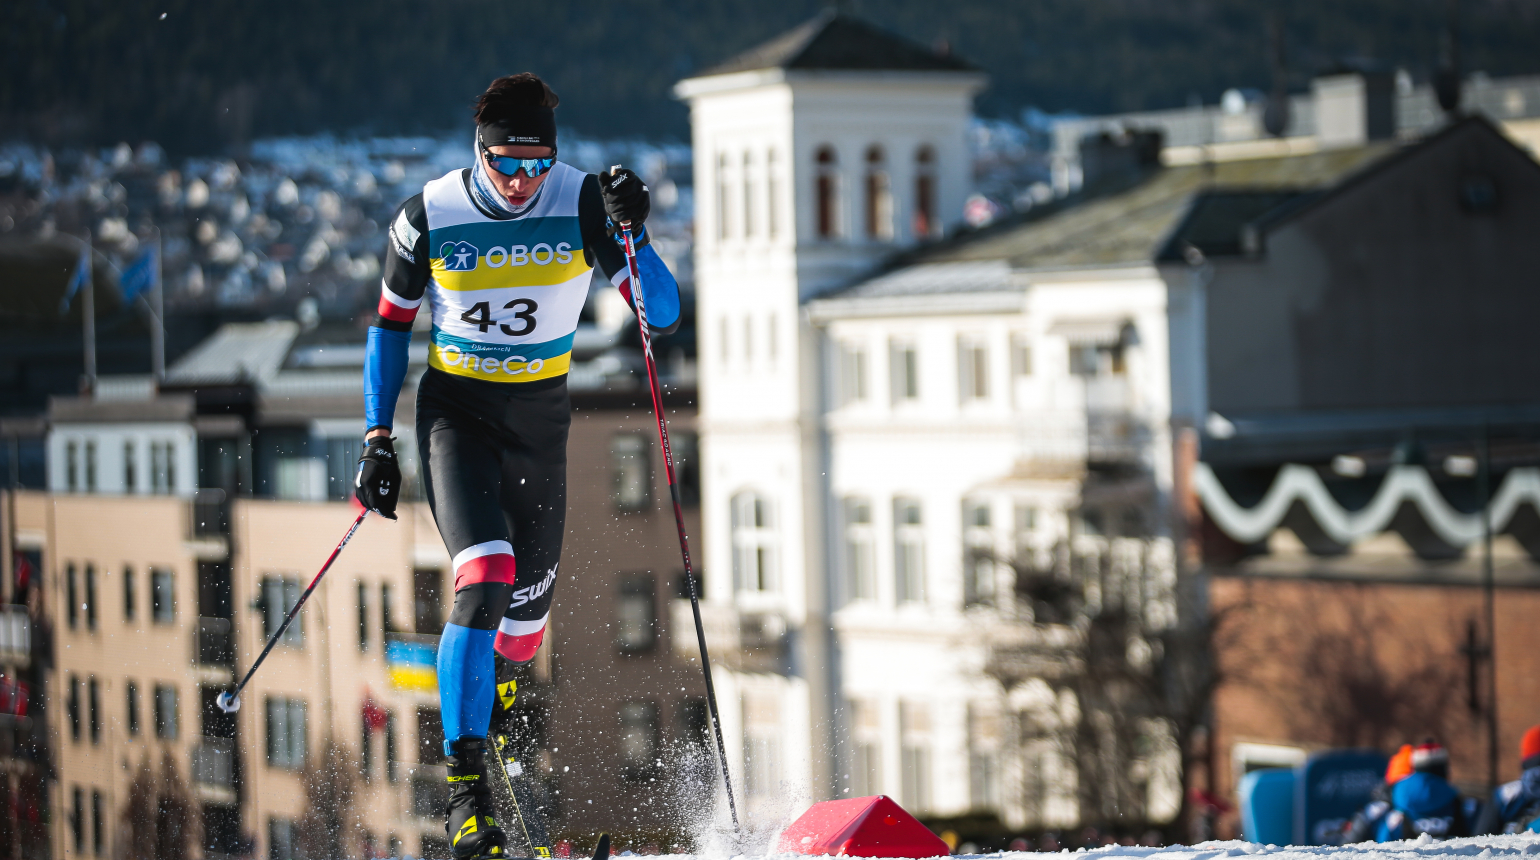 Šest českých běžců na lyžích ve čtvrtfinále Světového poháru! Nejlepší byla Antošová na 19. místě